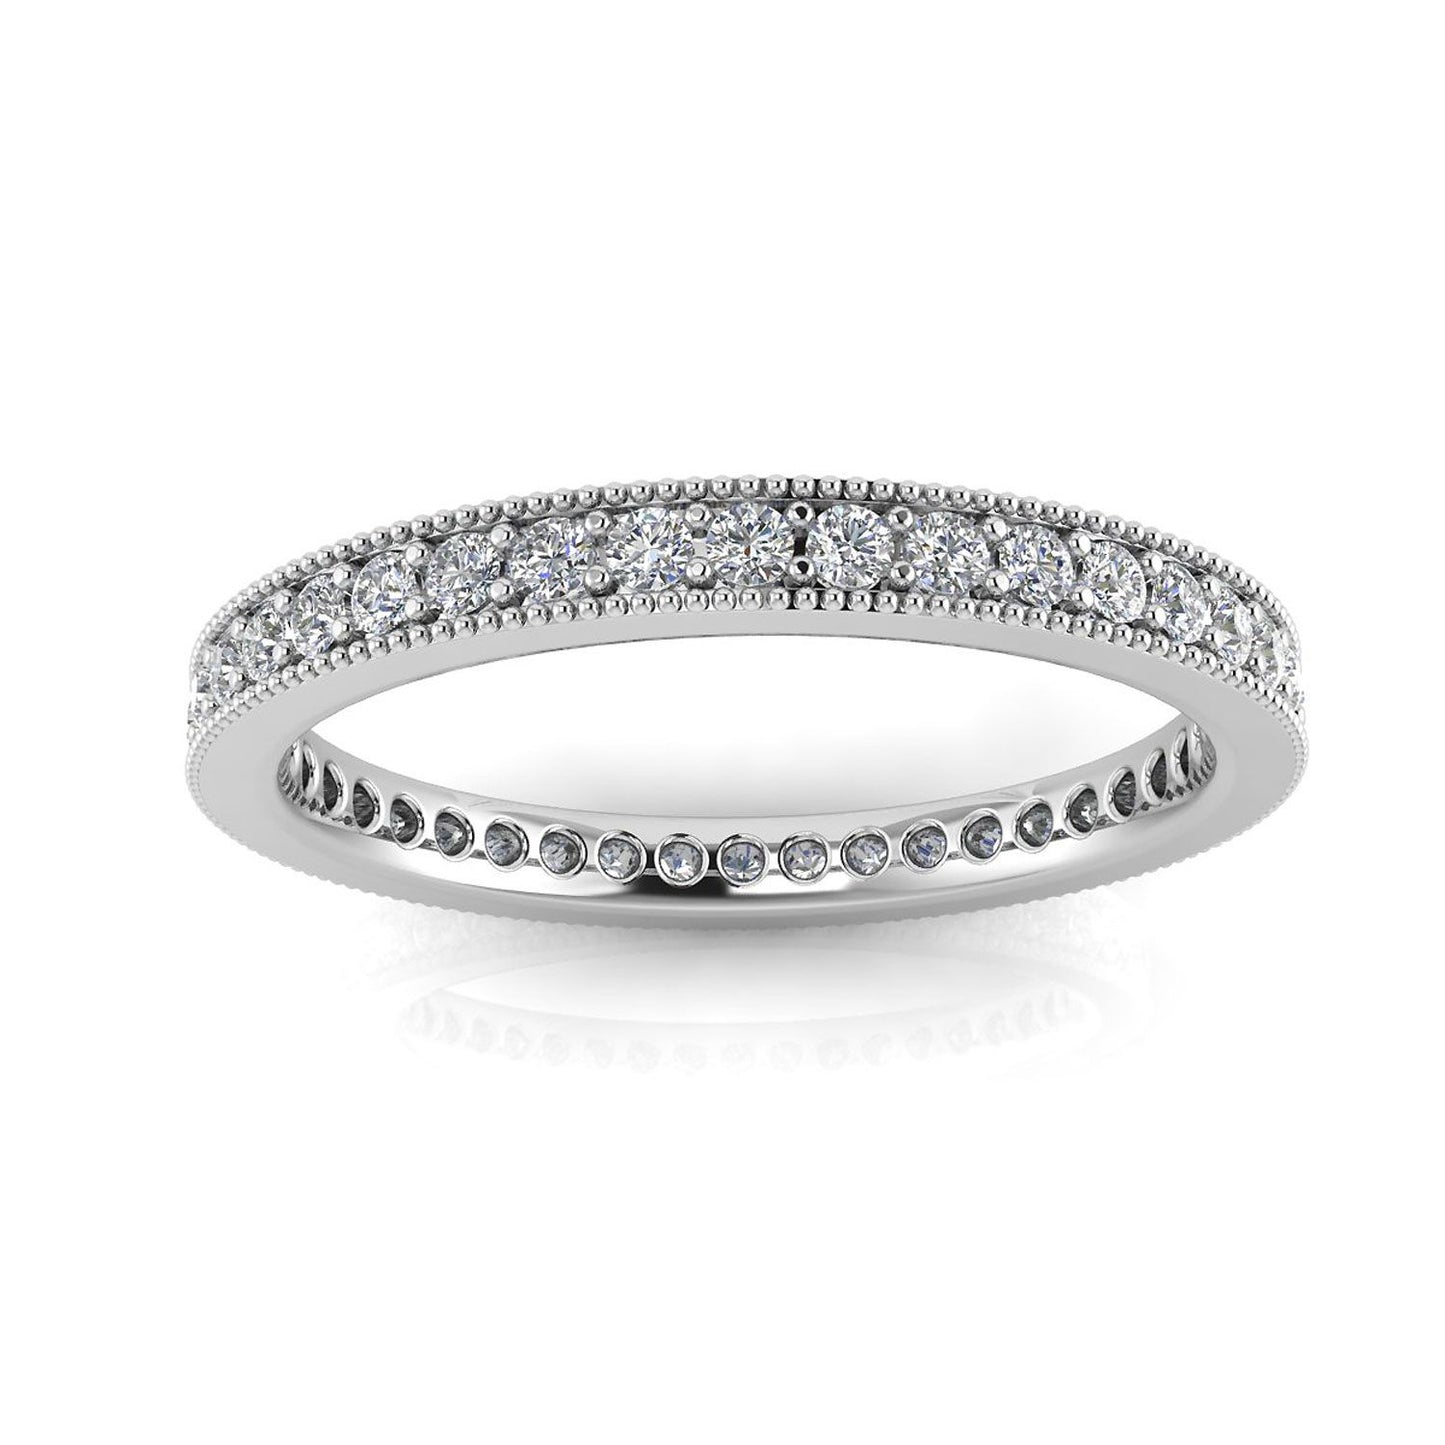 Round Brilliant Cut Diamond Pave & Milgrain Set Eternity Ring In Platinum  (0.86ct. Tw.) Ring Size 4.5